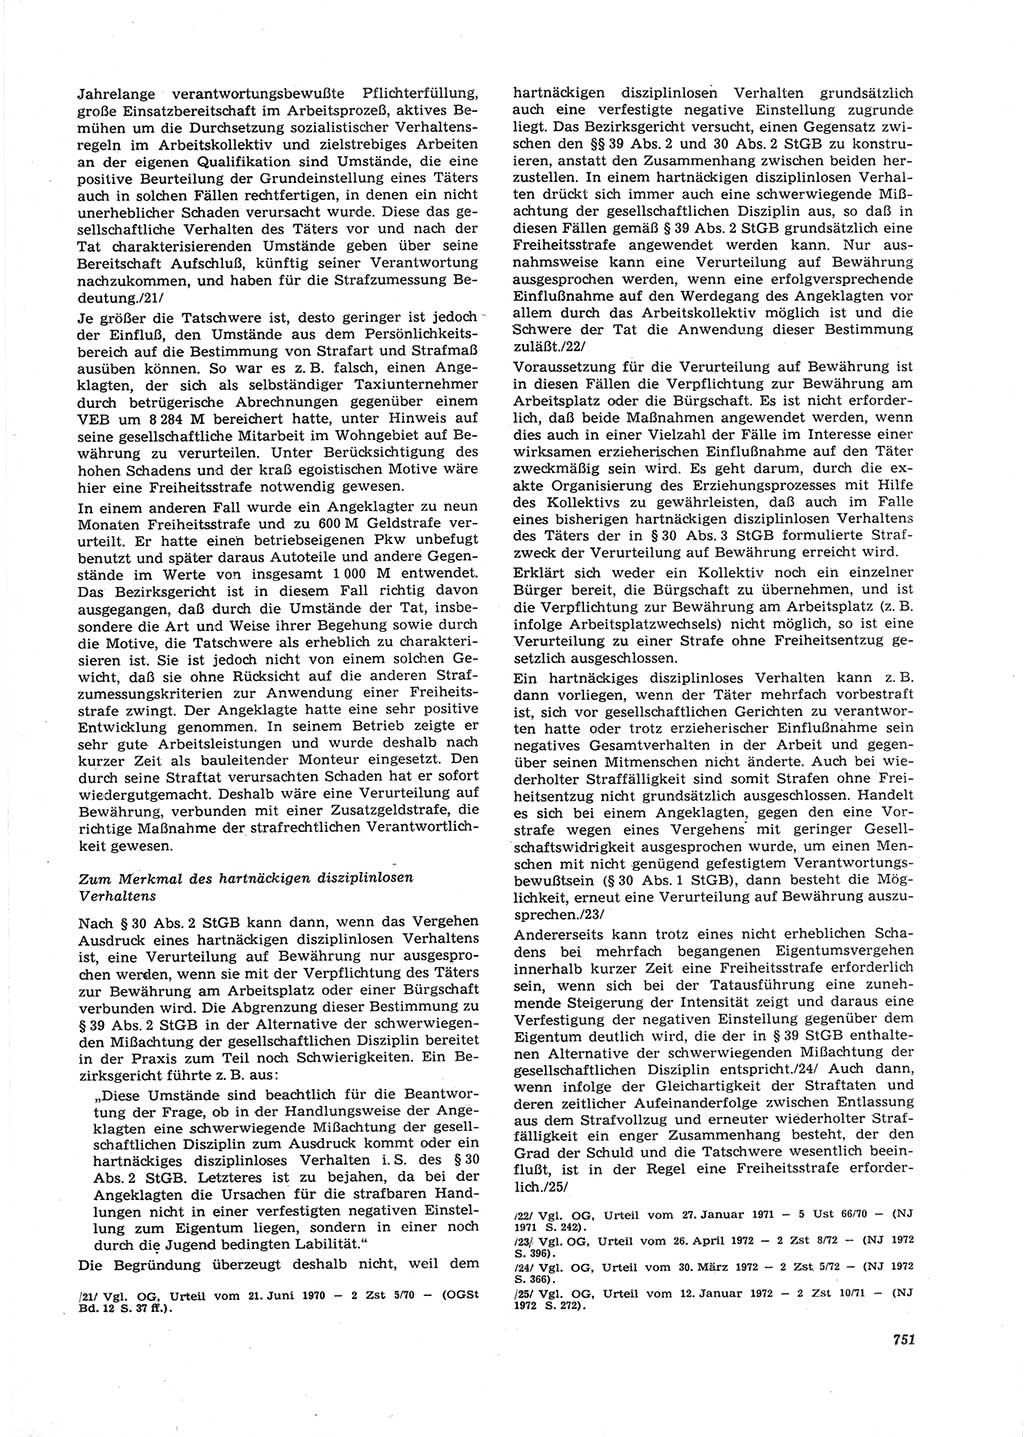 Neue Justiz (NJ), Zeitschrift für Recht und Rechtswissenschaft [Deutsche Demokratische Republik (DDR)], 26. Jahrgang 1972, Seite 751 (NJ DDR 1972, S. 751)